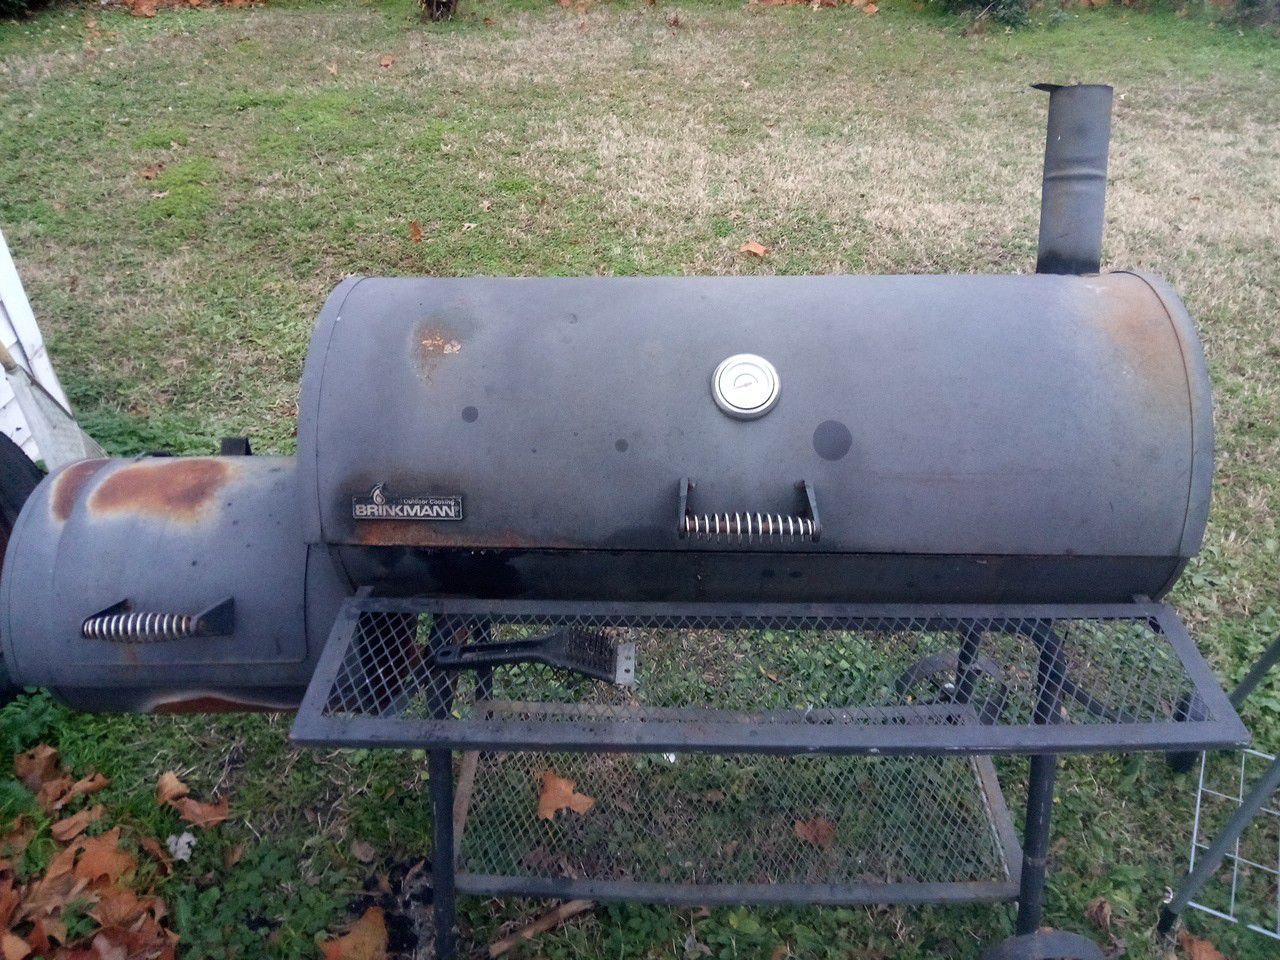 Big BBQ smoker grill